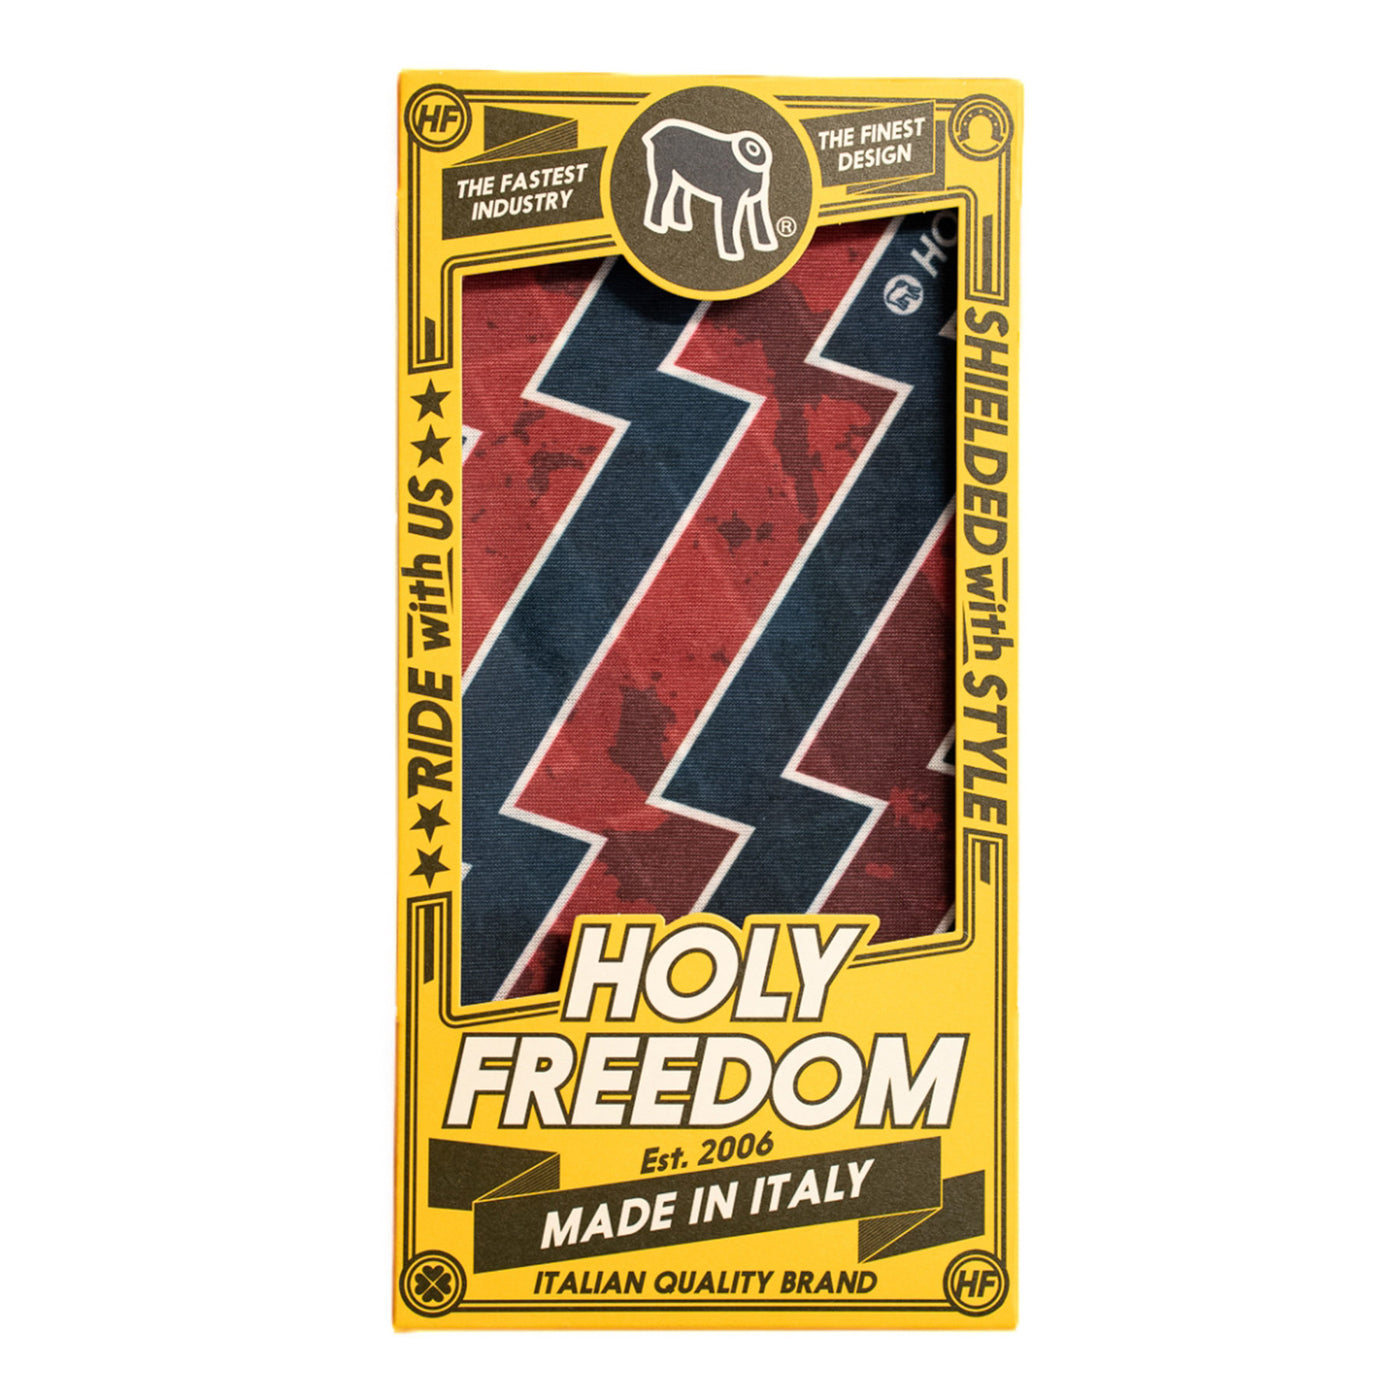 Holy Freedom Bandana Styles